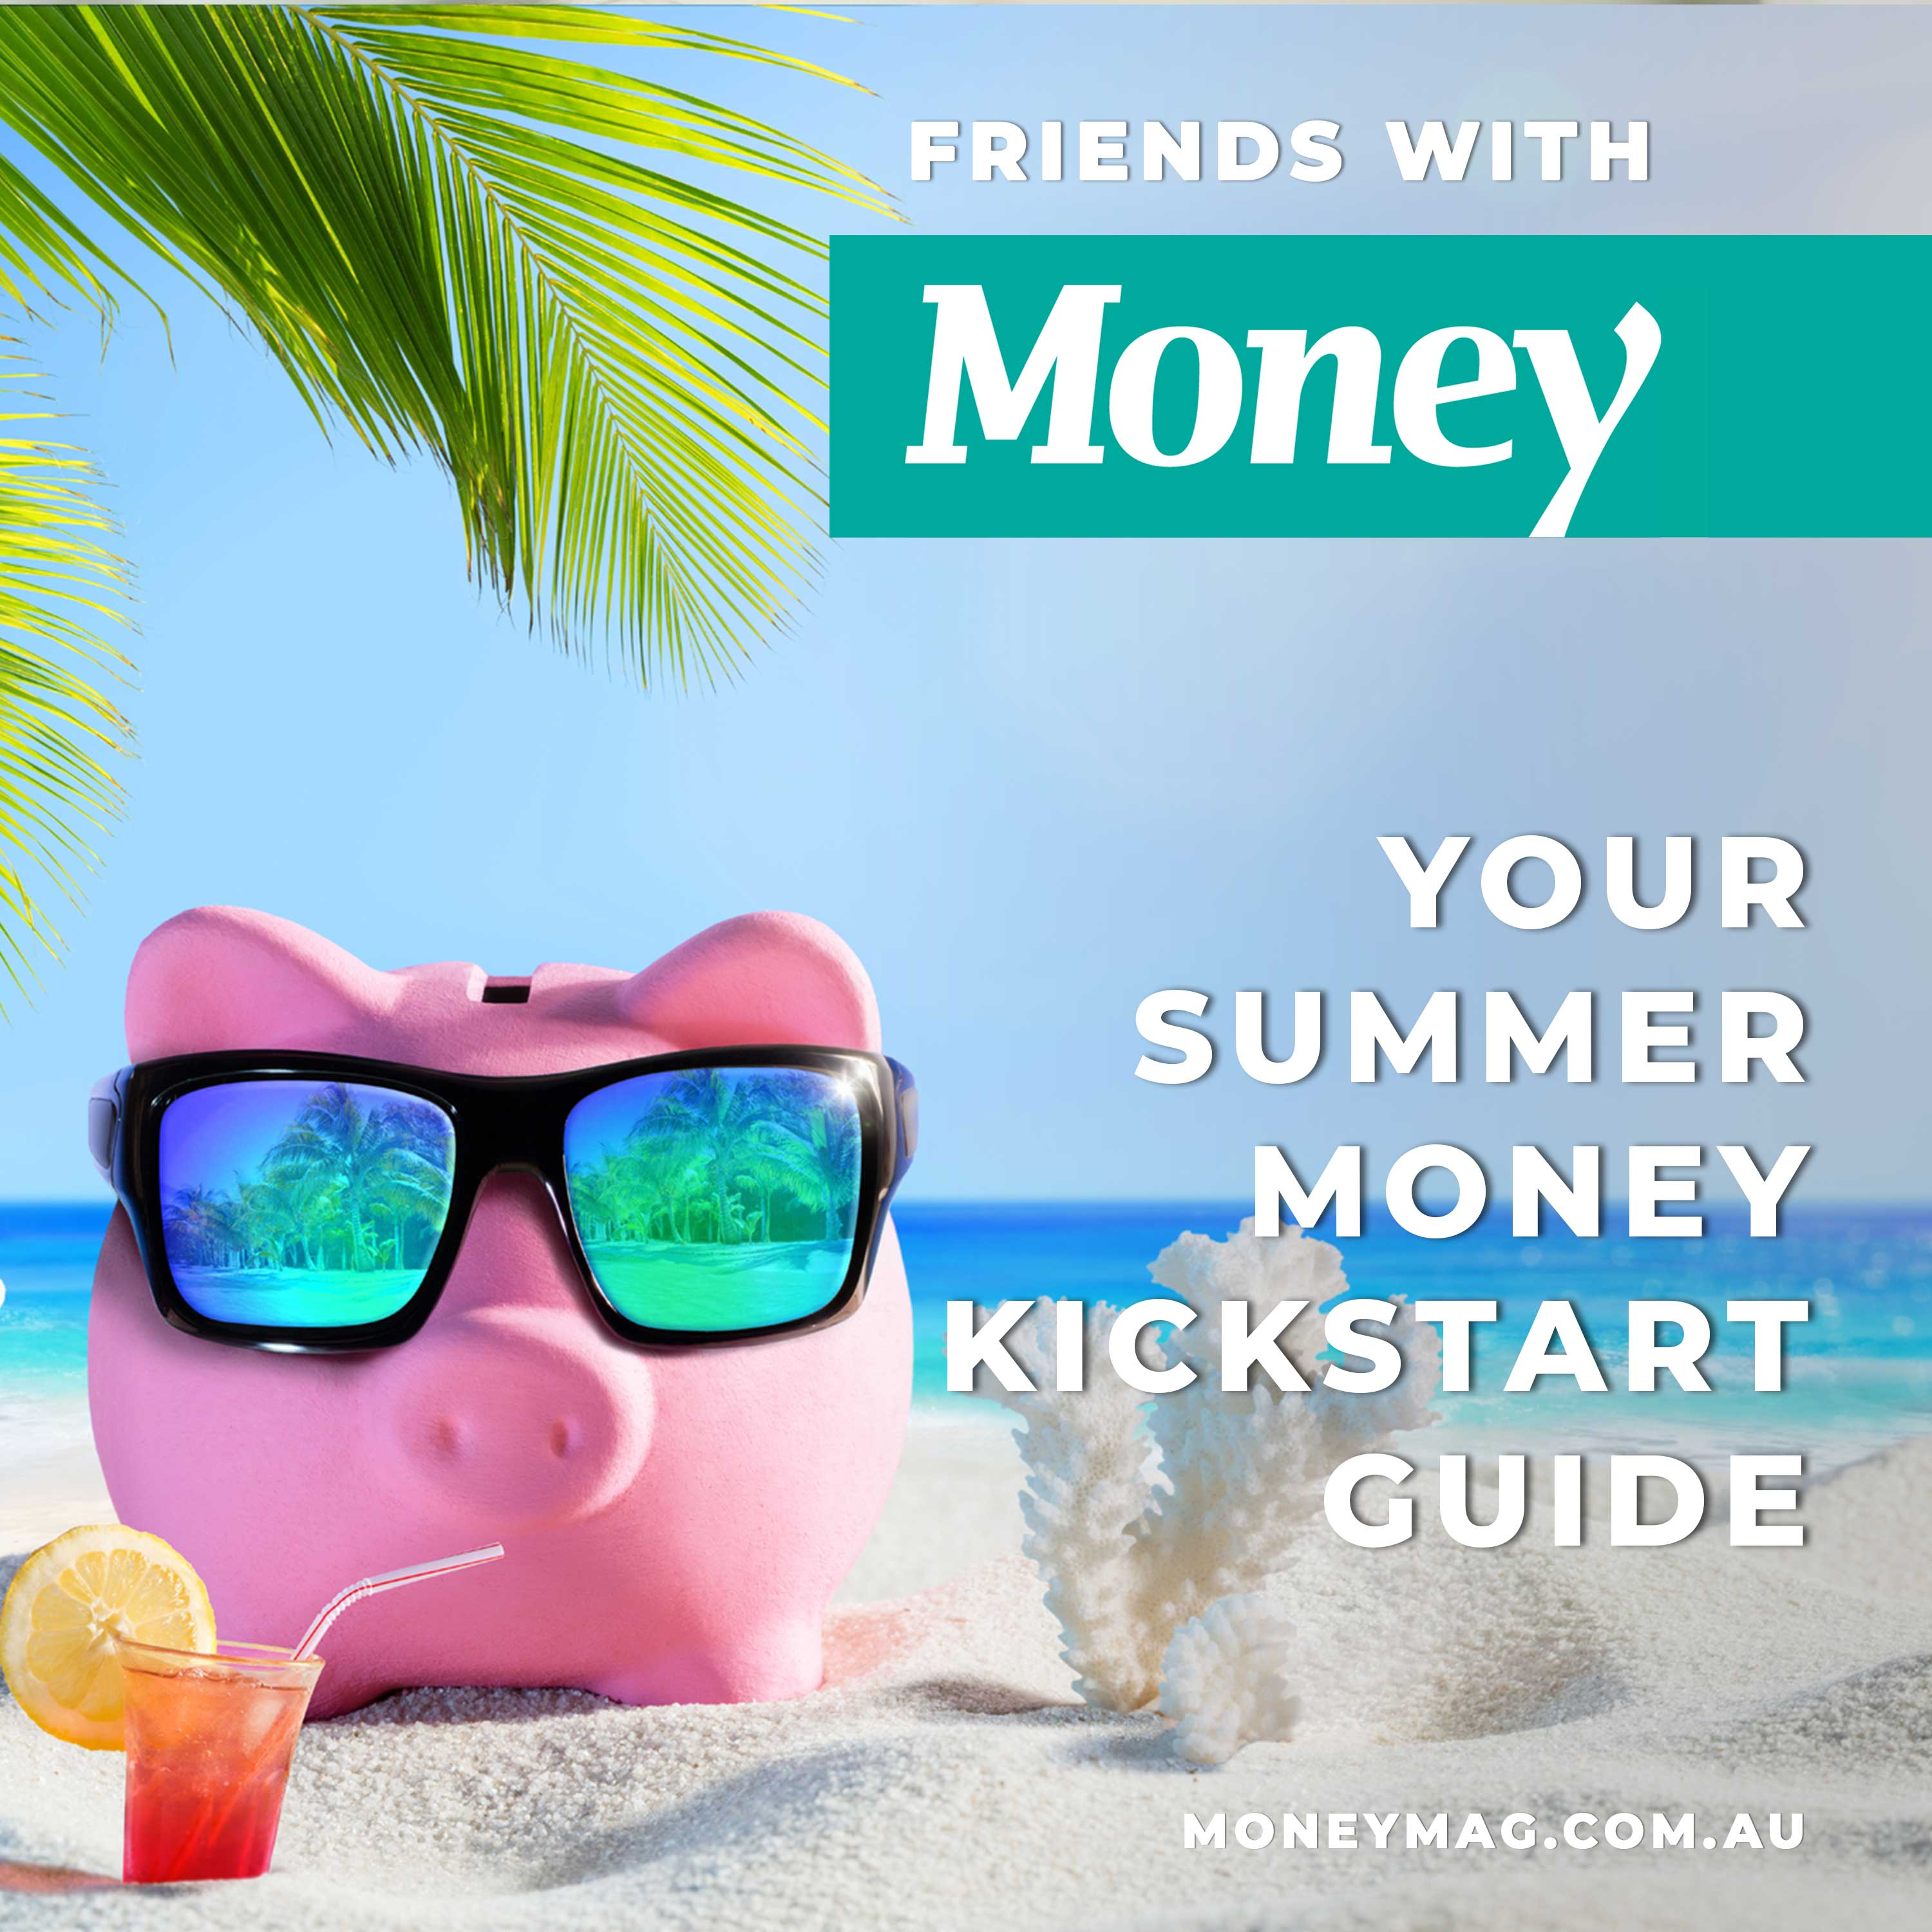 Your summer money kickstart guide